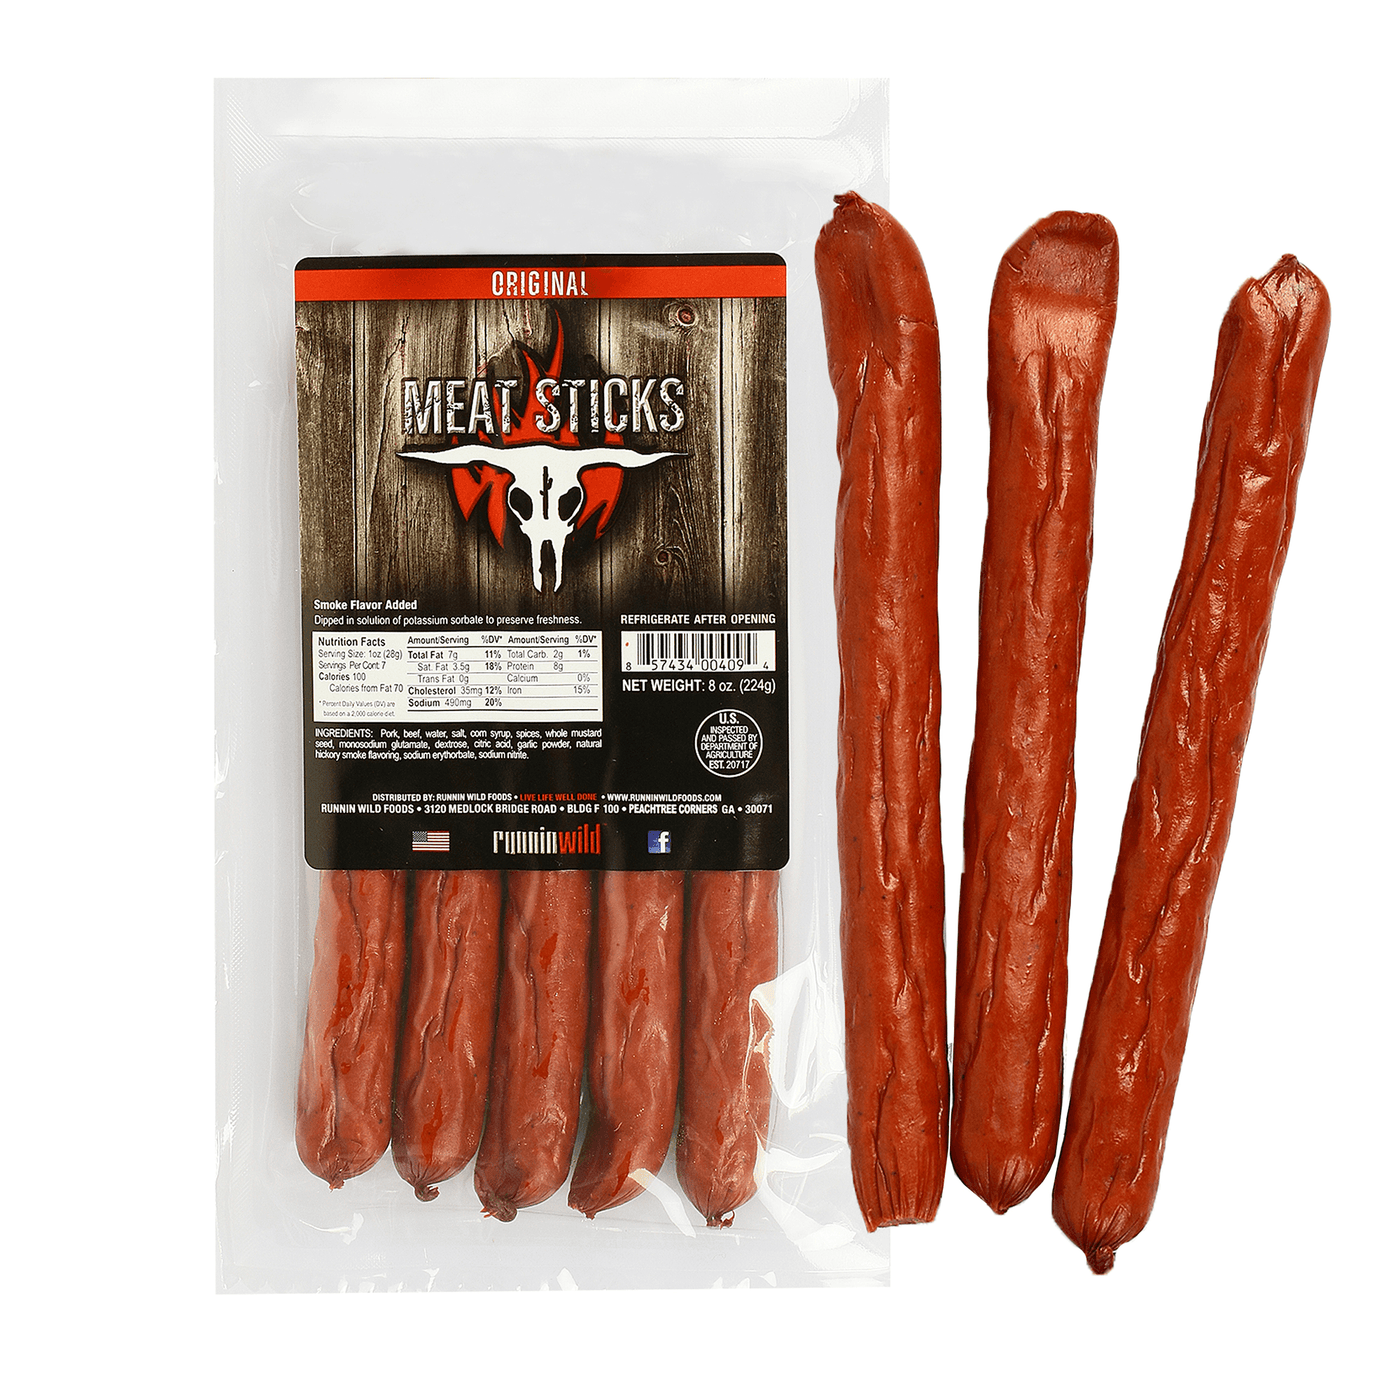 8oz Original Meat Sticks